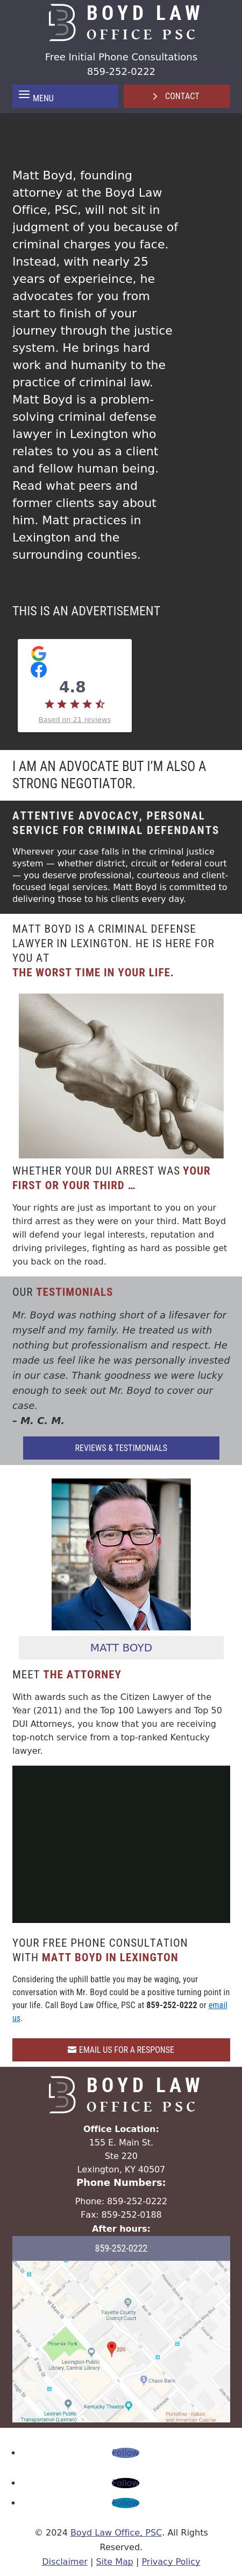 Boyd Law Office - Lexington KY Lawyers